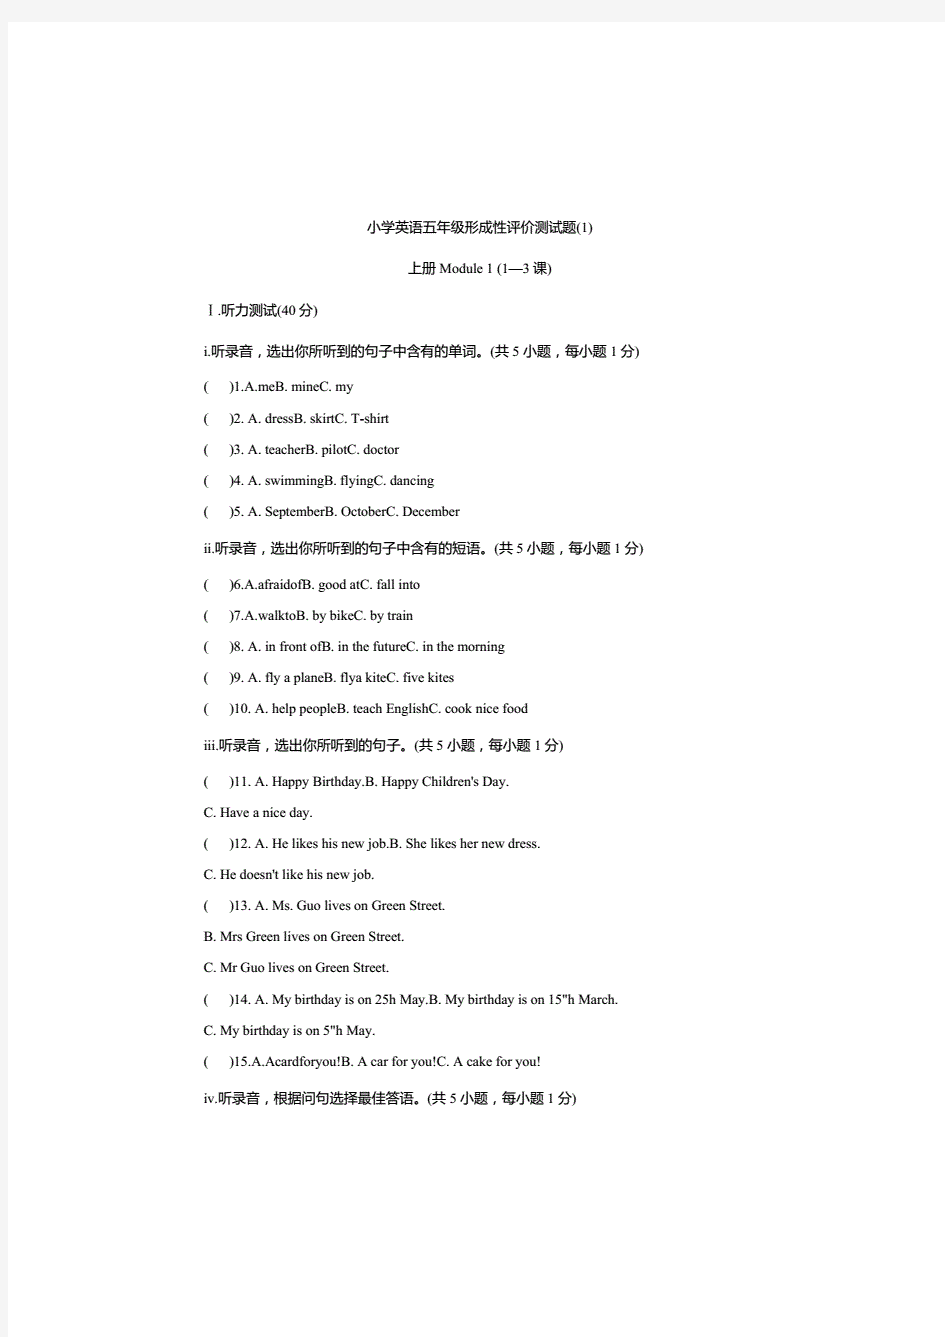 新版牛津上海版(深圳版)小学英语五年级上册单元测试题(全册).(20210219073536)